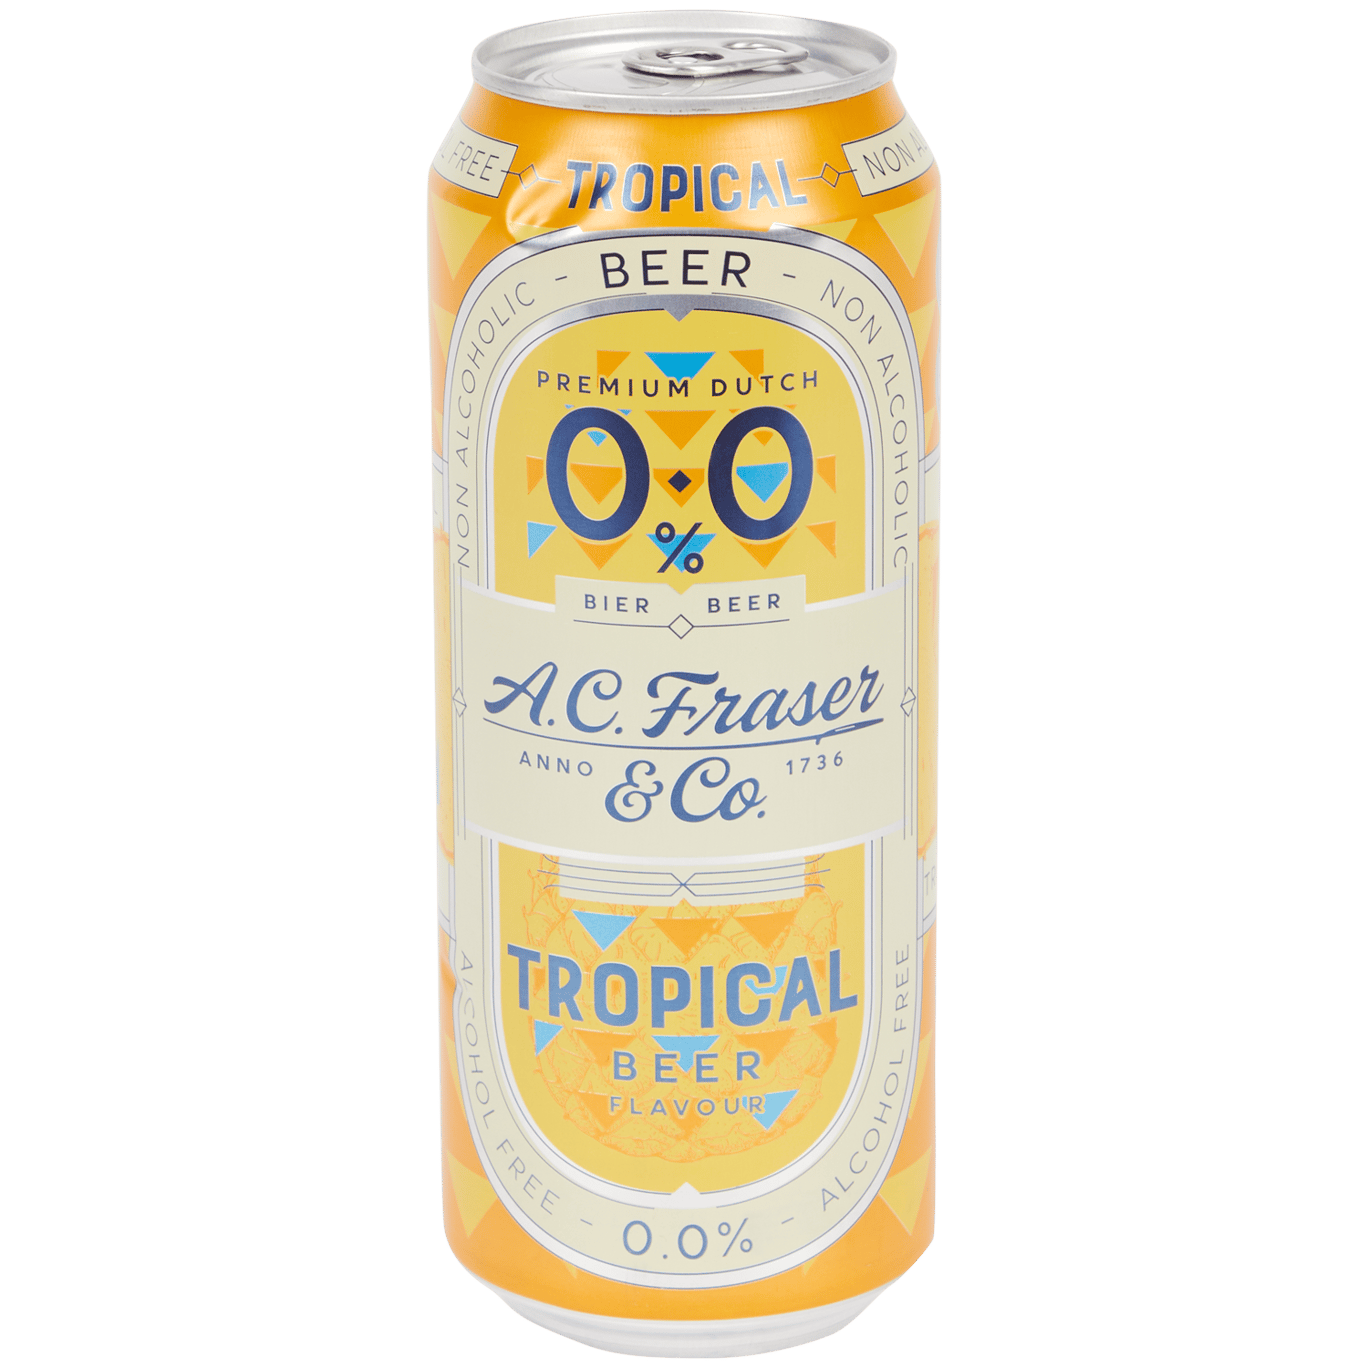 A.C. Fraser & Co 0.0% bier